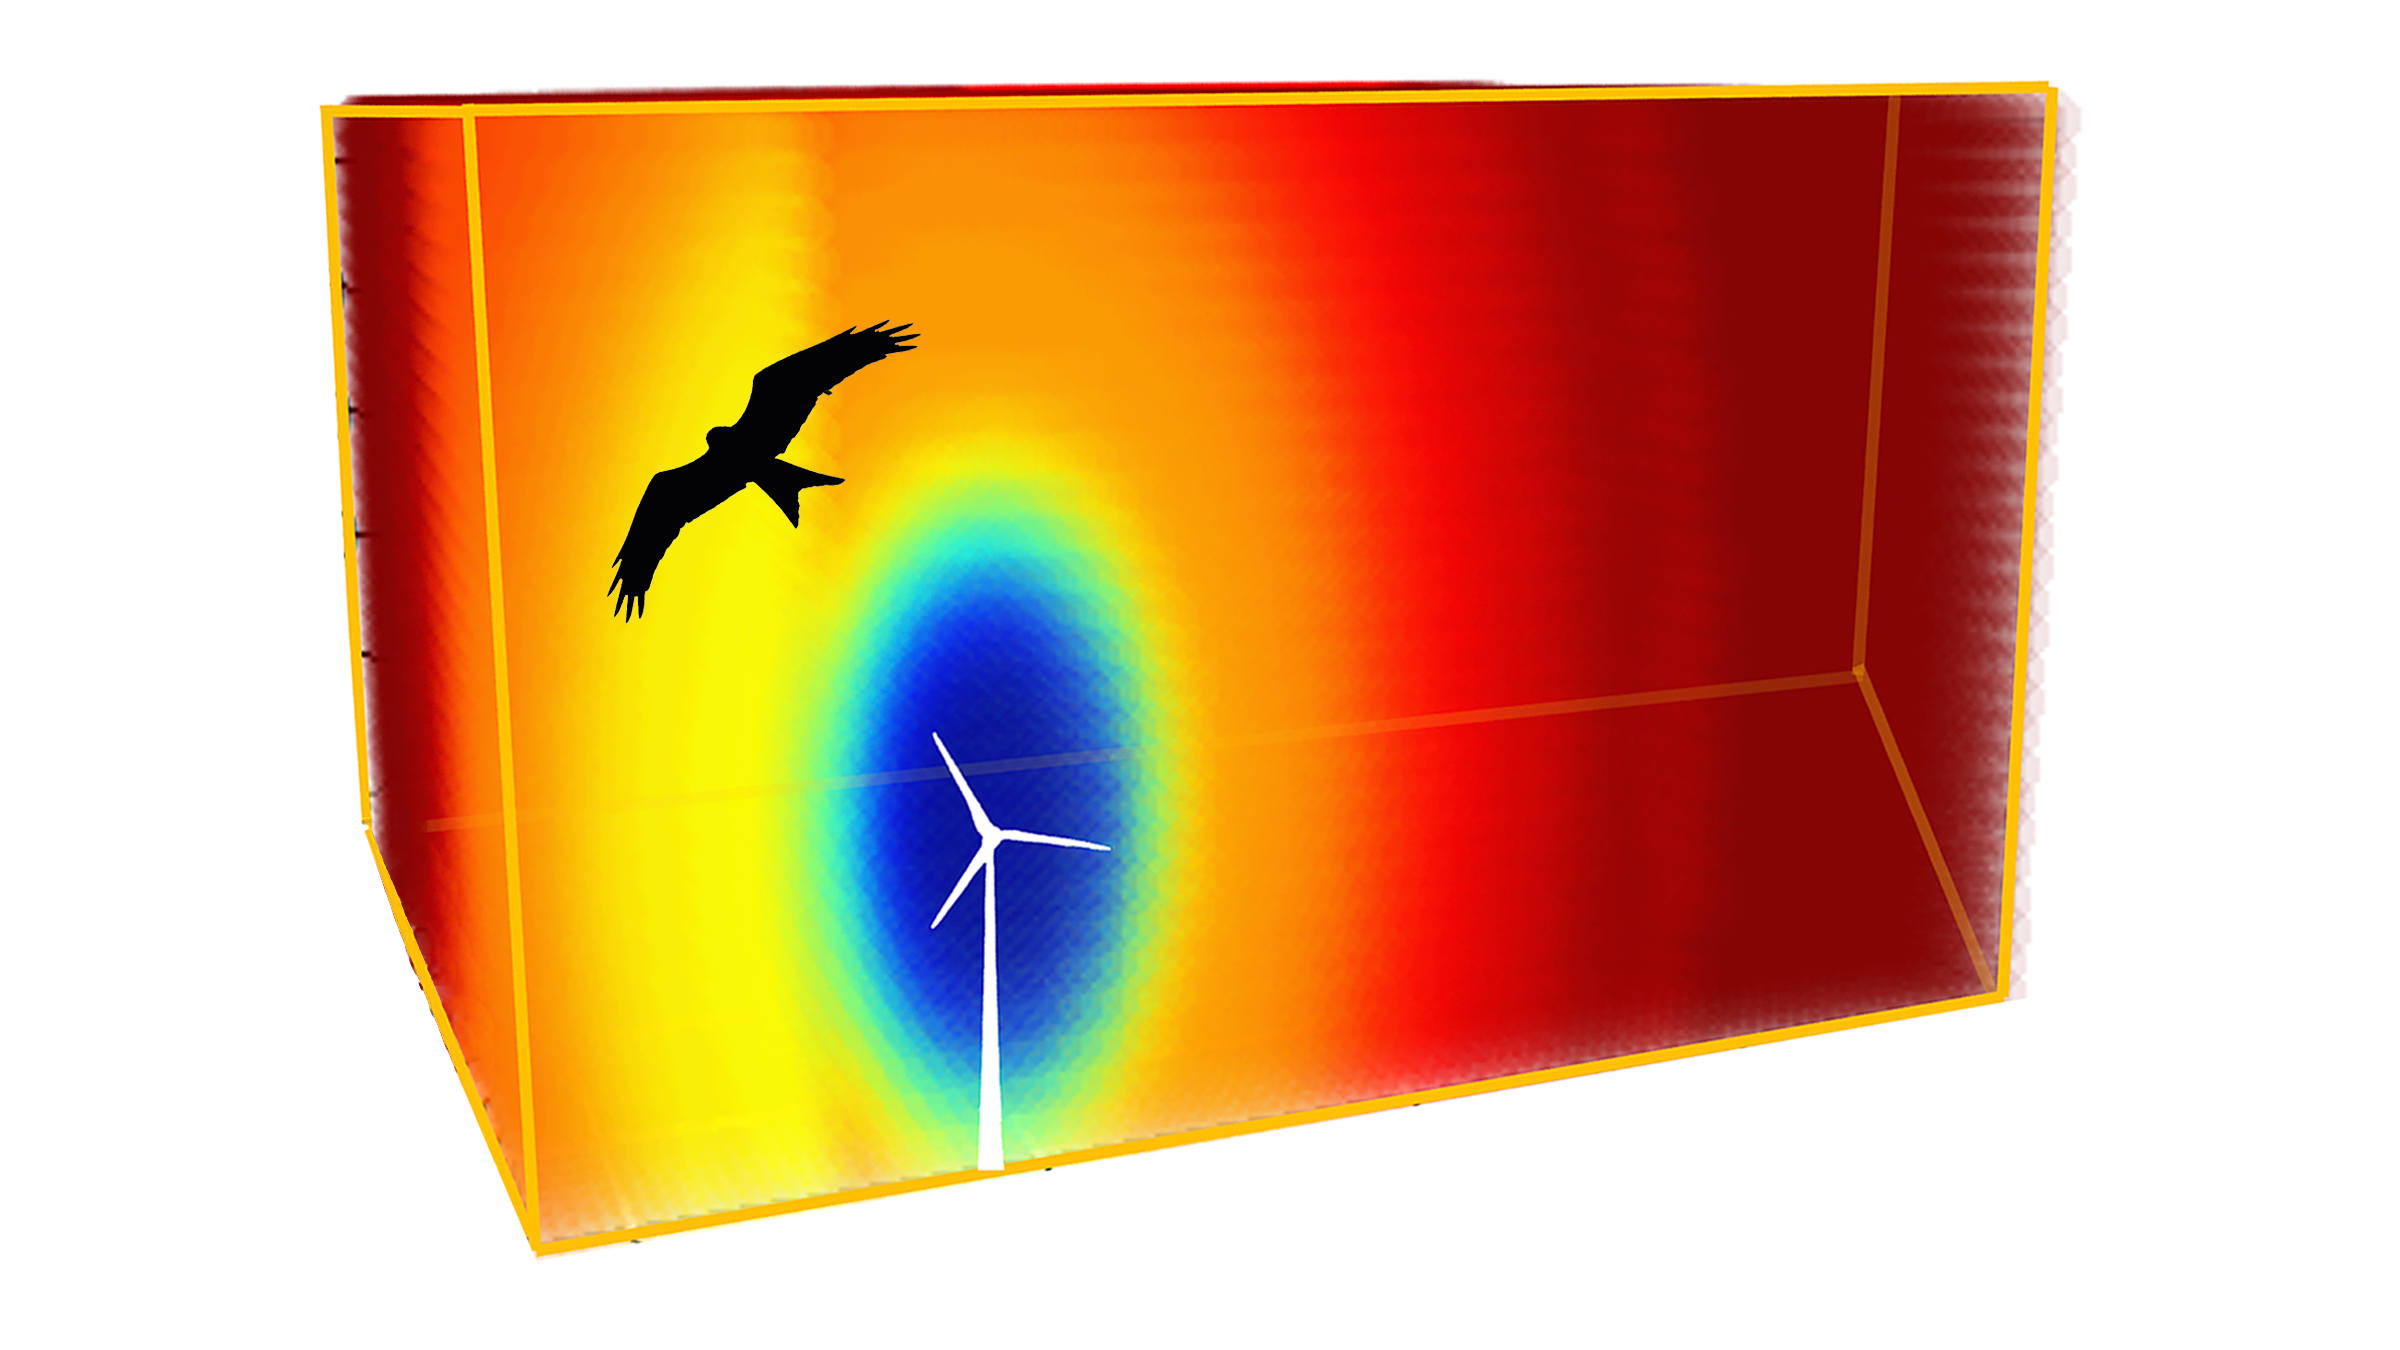 Grafische 3D-Darstellung, in der ein Greifvogel über einem Windrad fliegt. Das Kollisionsrisiko des Vogels mit dem Windrad ist mit unterschiedlichen Farben dargestellt.